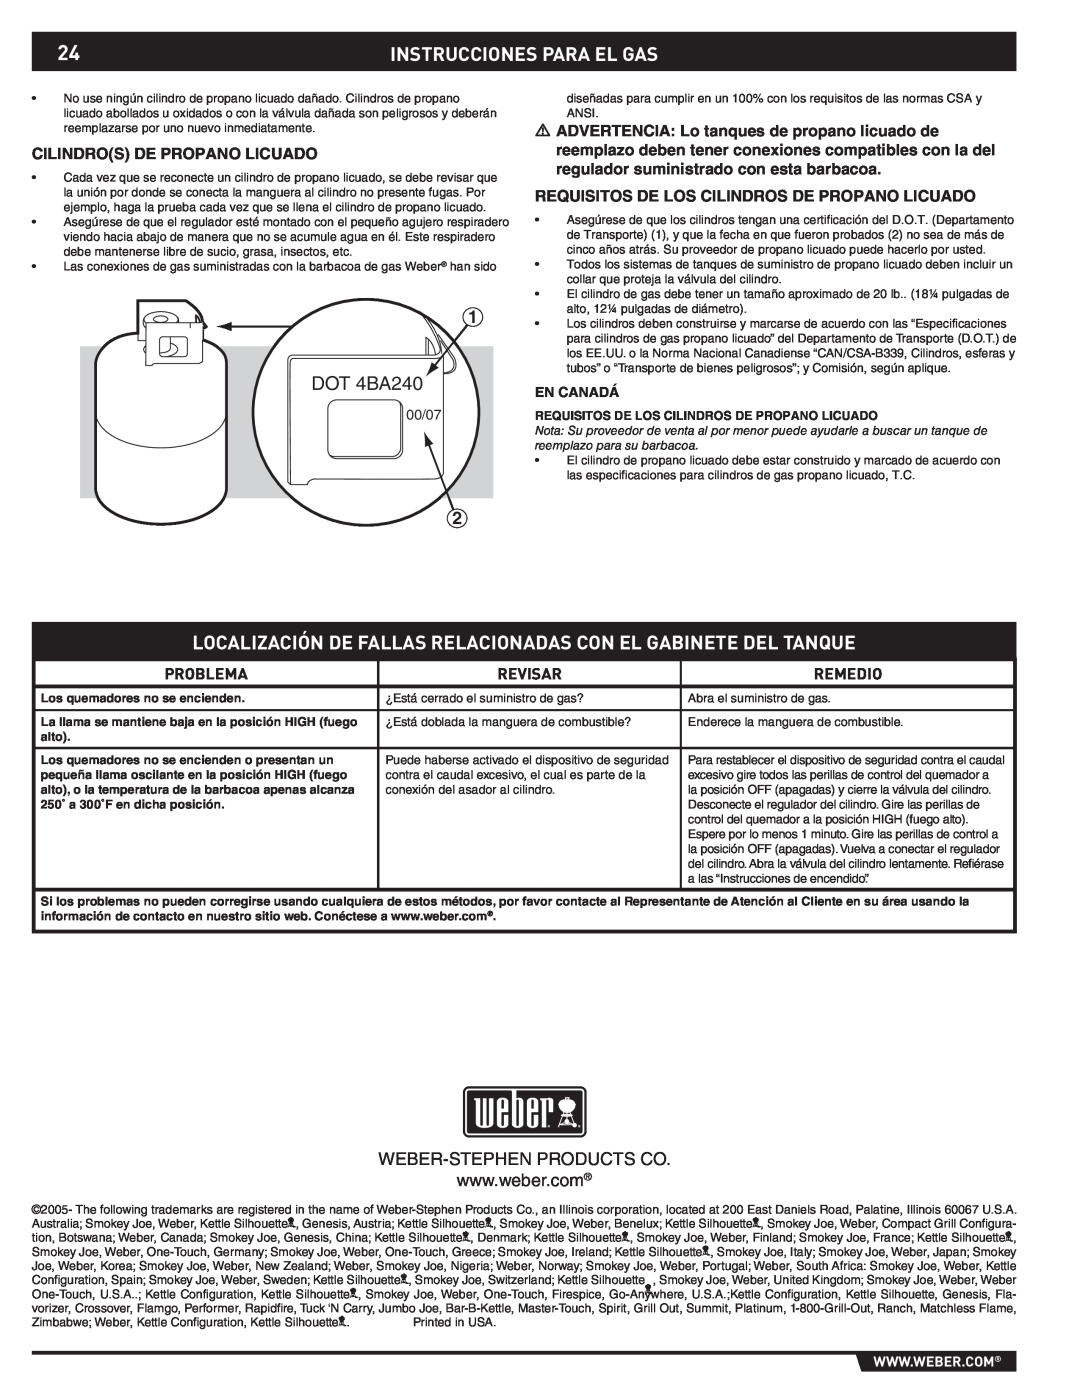 Weber 43176 manual Instrucciones Para El Gas, DOT 4BA240, Problema, Revisar, Remedio, 00/07, En Canadá, alto 